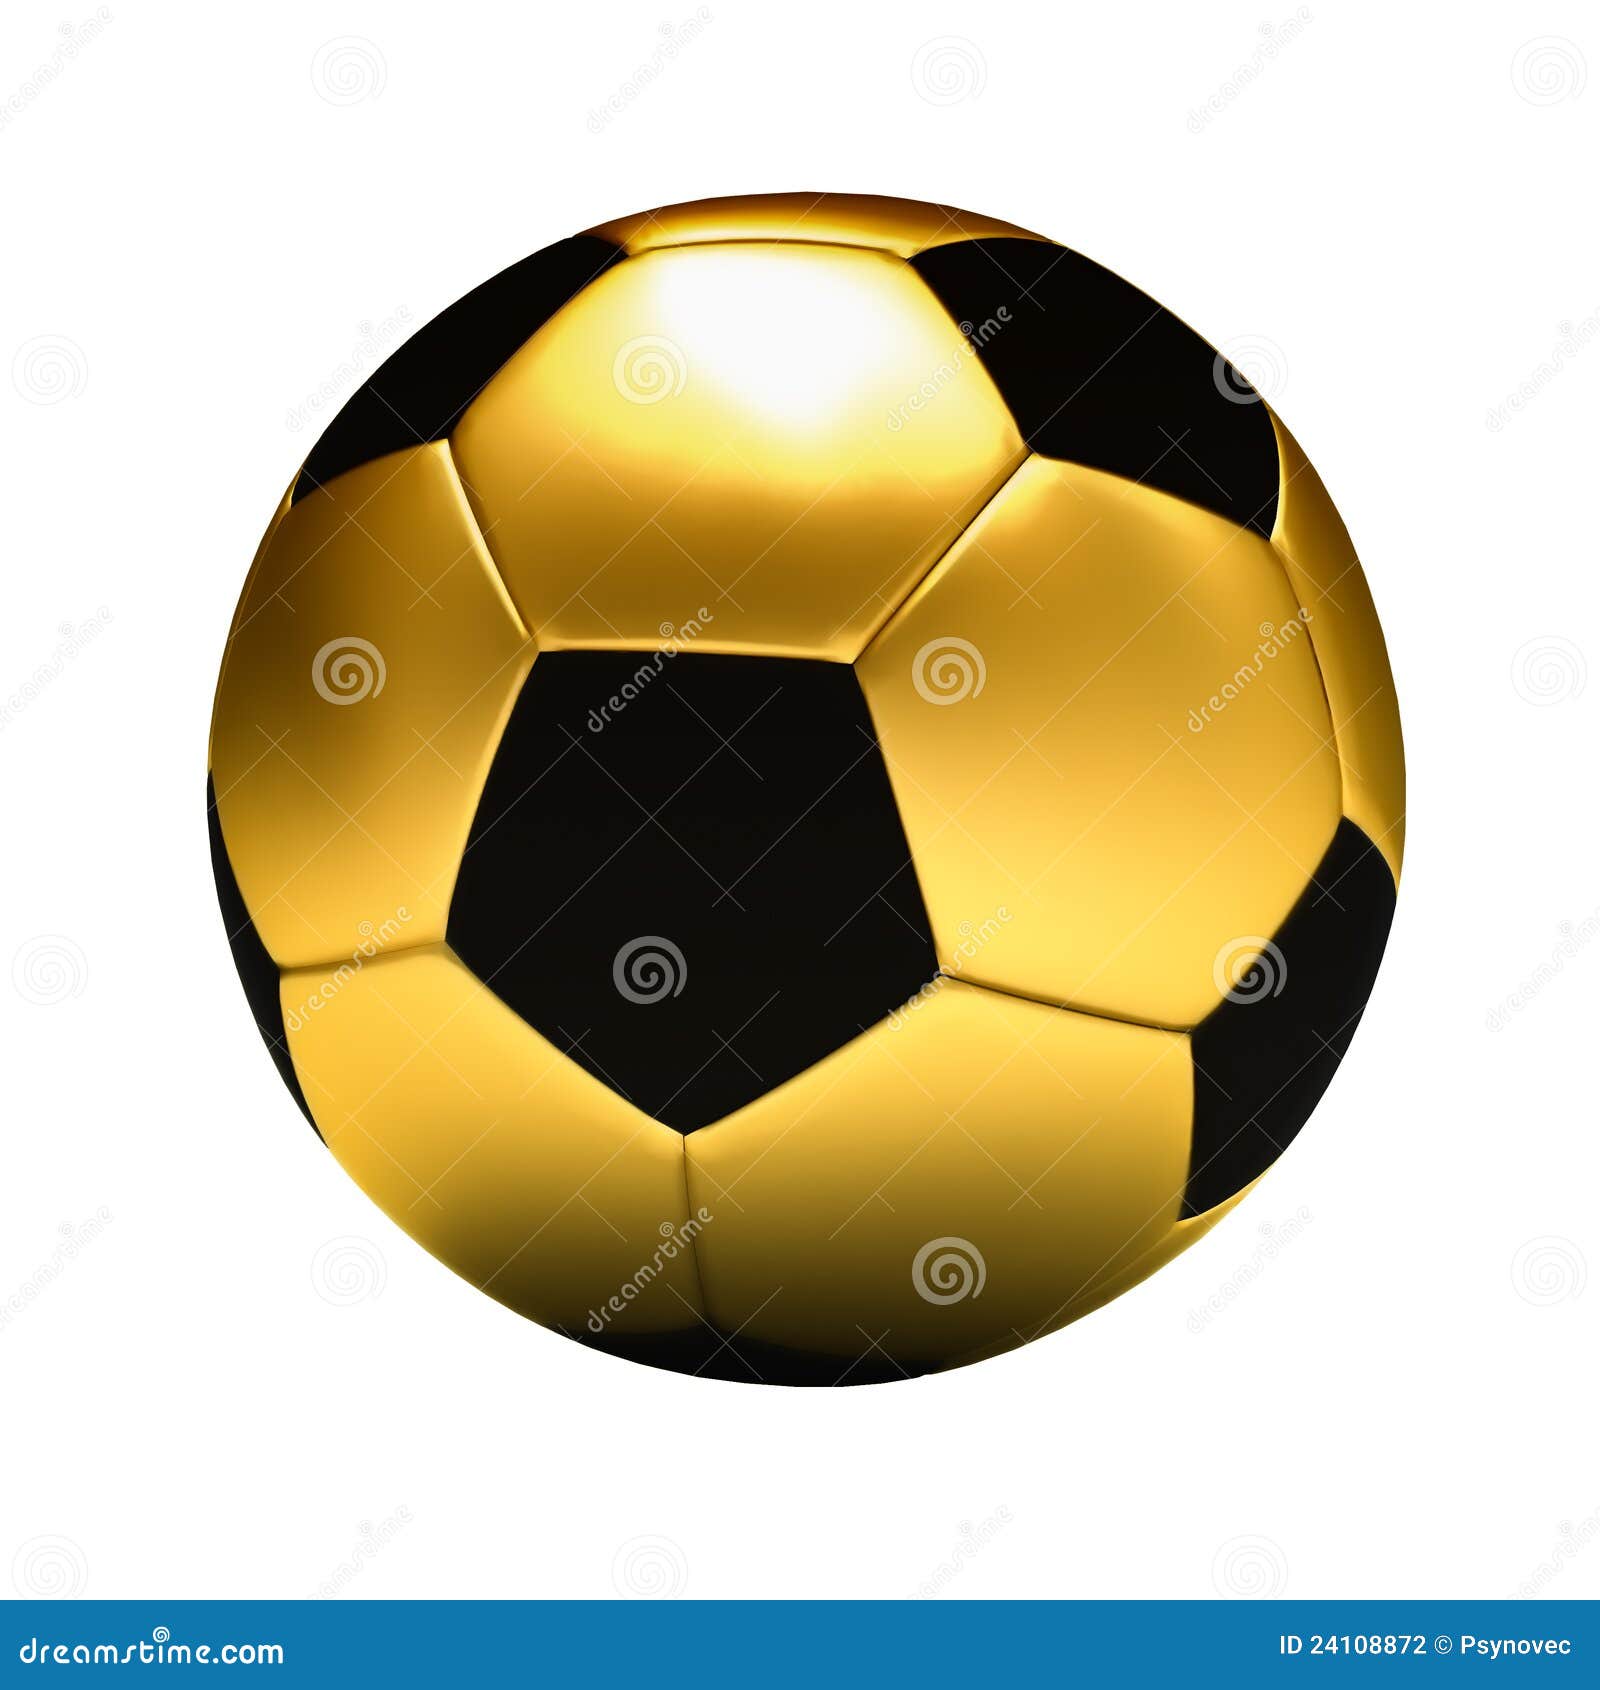 Golden football ball stock illustration. Illustration of isolated ...